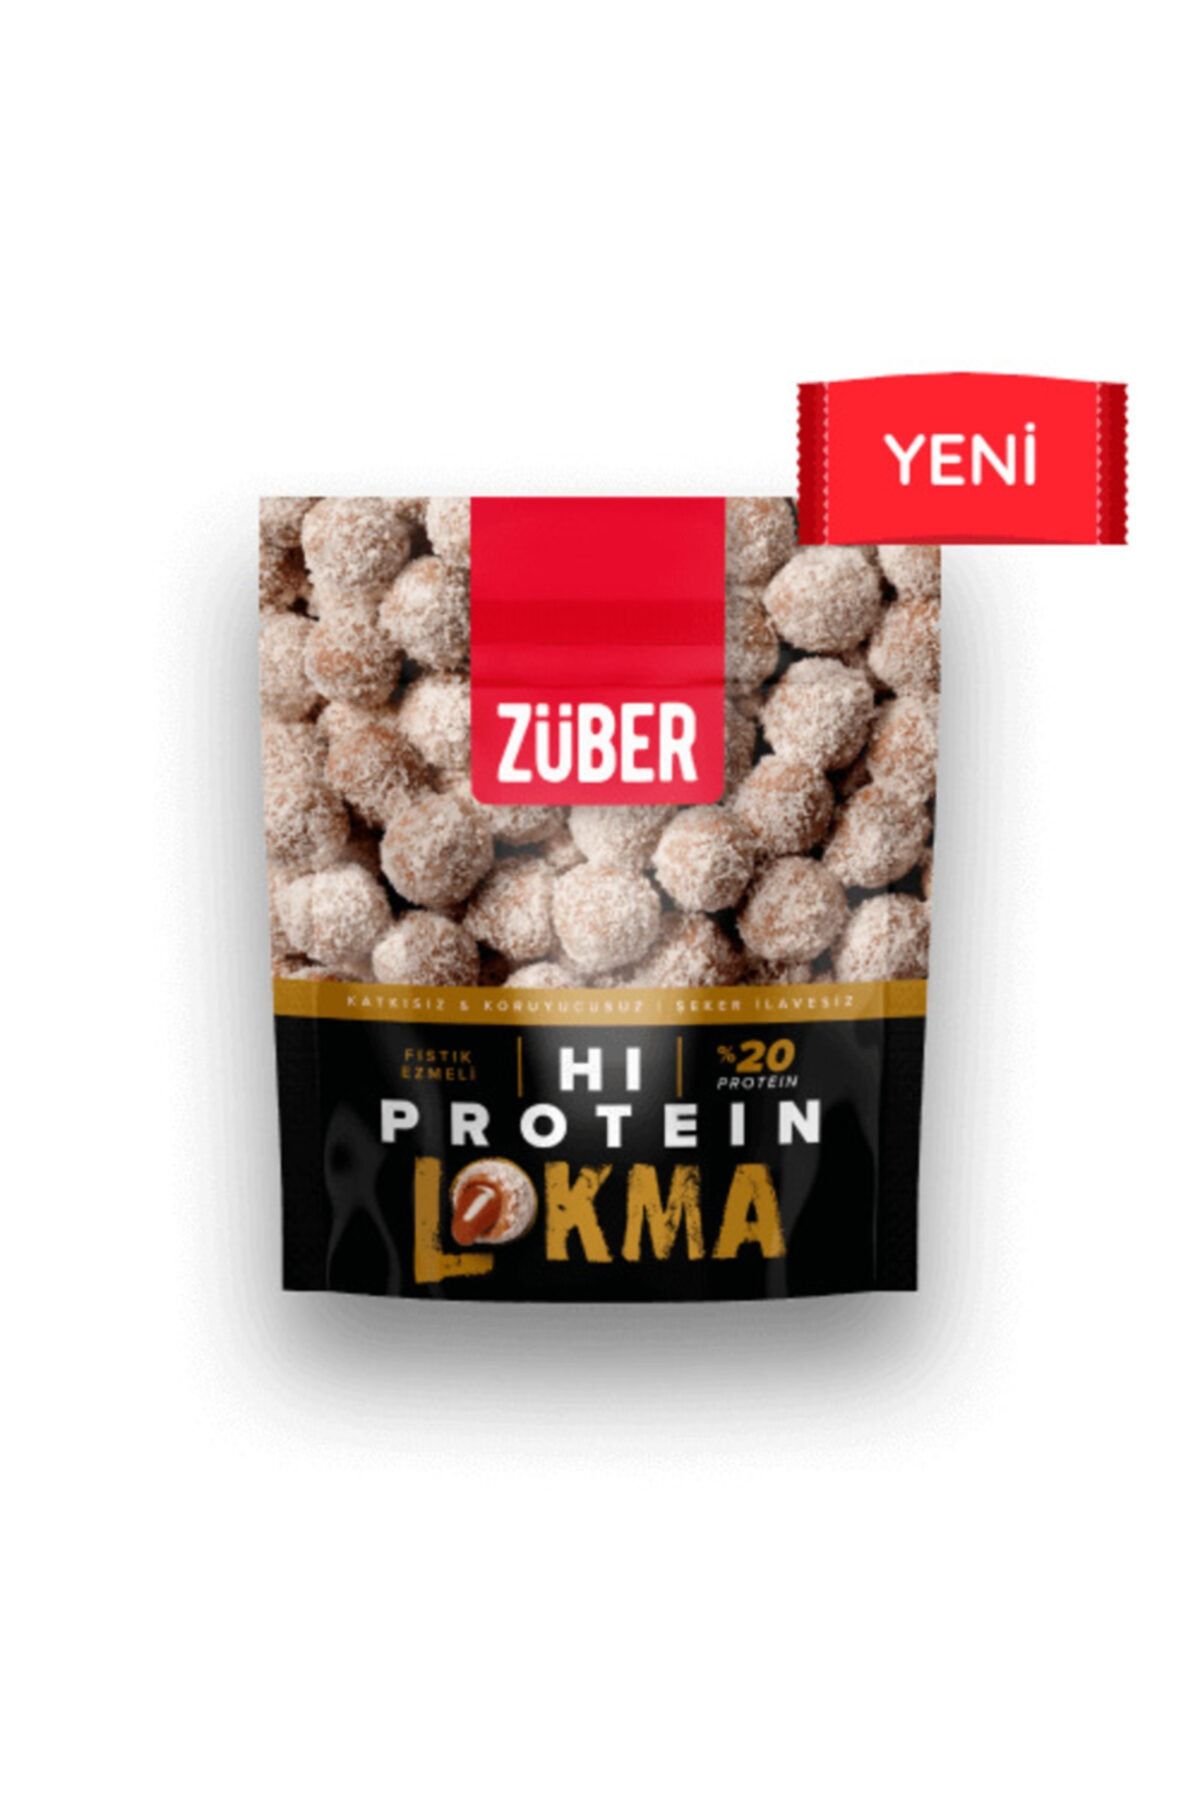 Züber Badem Kaplı Kakaolu Fıstık Ezmeli Hi Protein Lokma 84gr